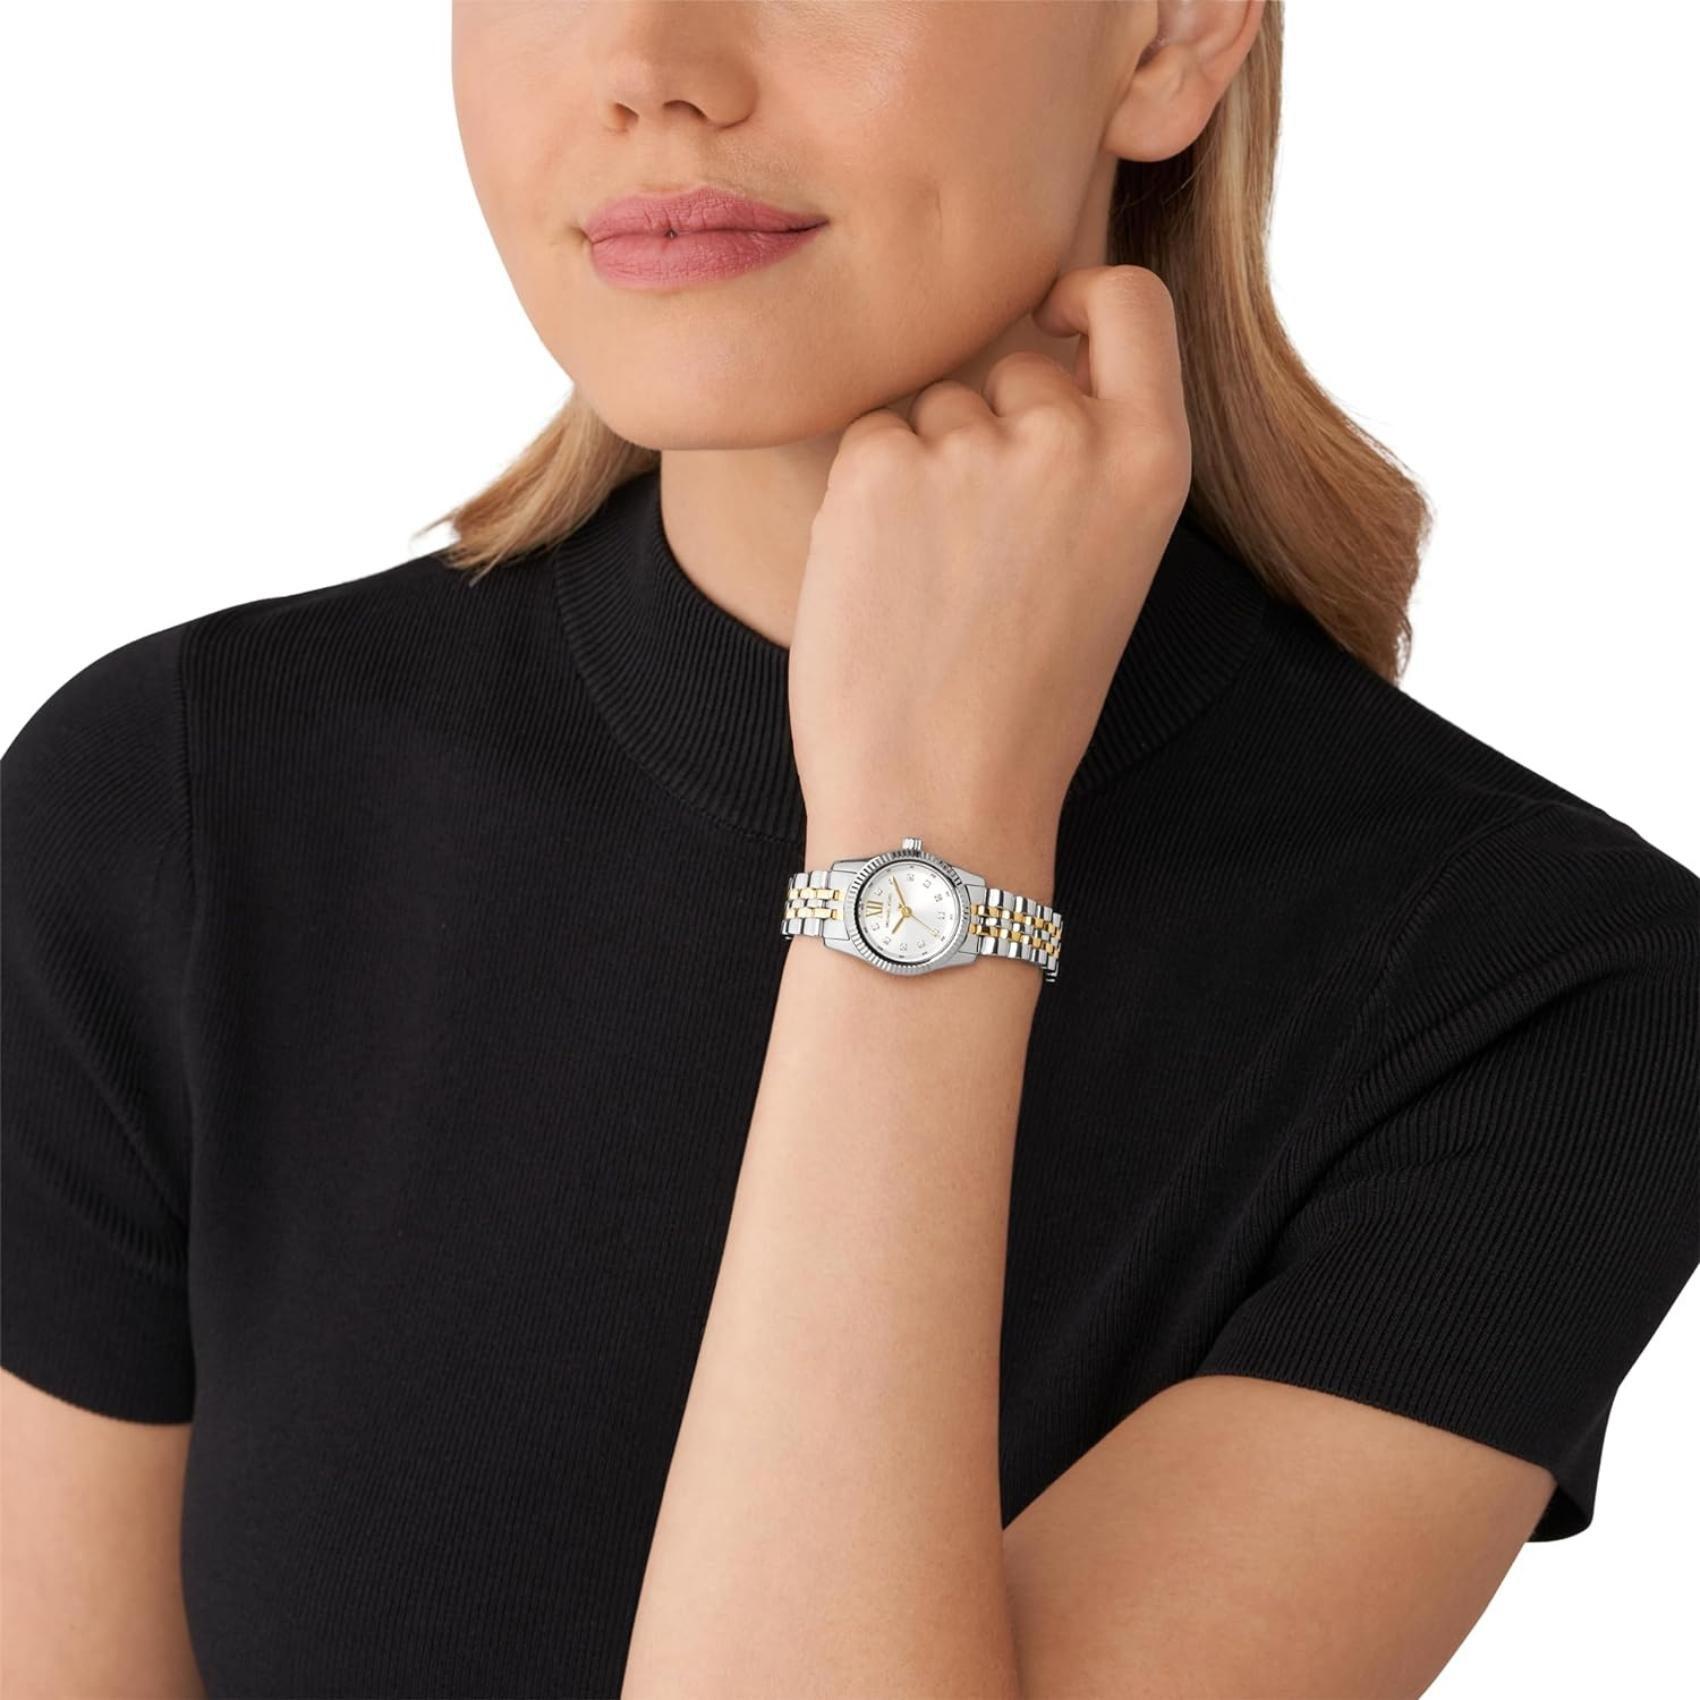 Γυναικείο ρολόι Michael Kors Lexington MK4740 με δίχρωμο ασημί-χρυσό ατσάλινο μπρασελέ, στρογγυλό άσπρο καντράν με ημερομηνία και ζιργκόν και στεφάνι 26mm.